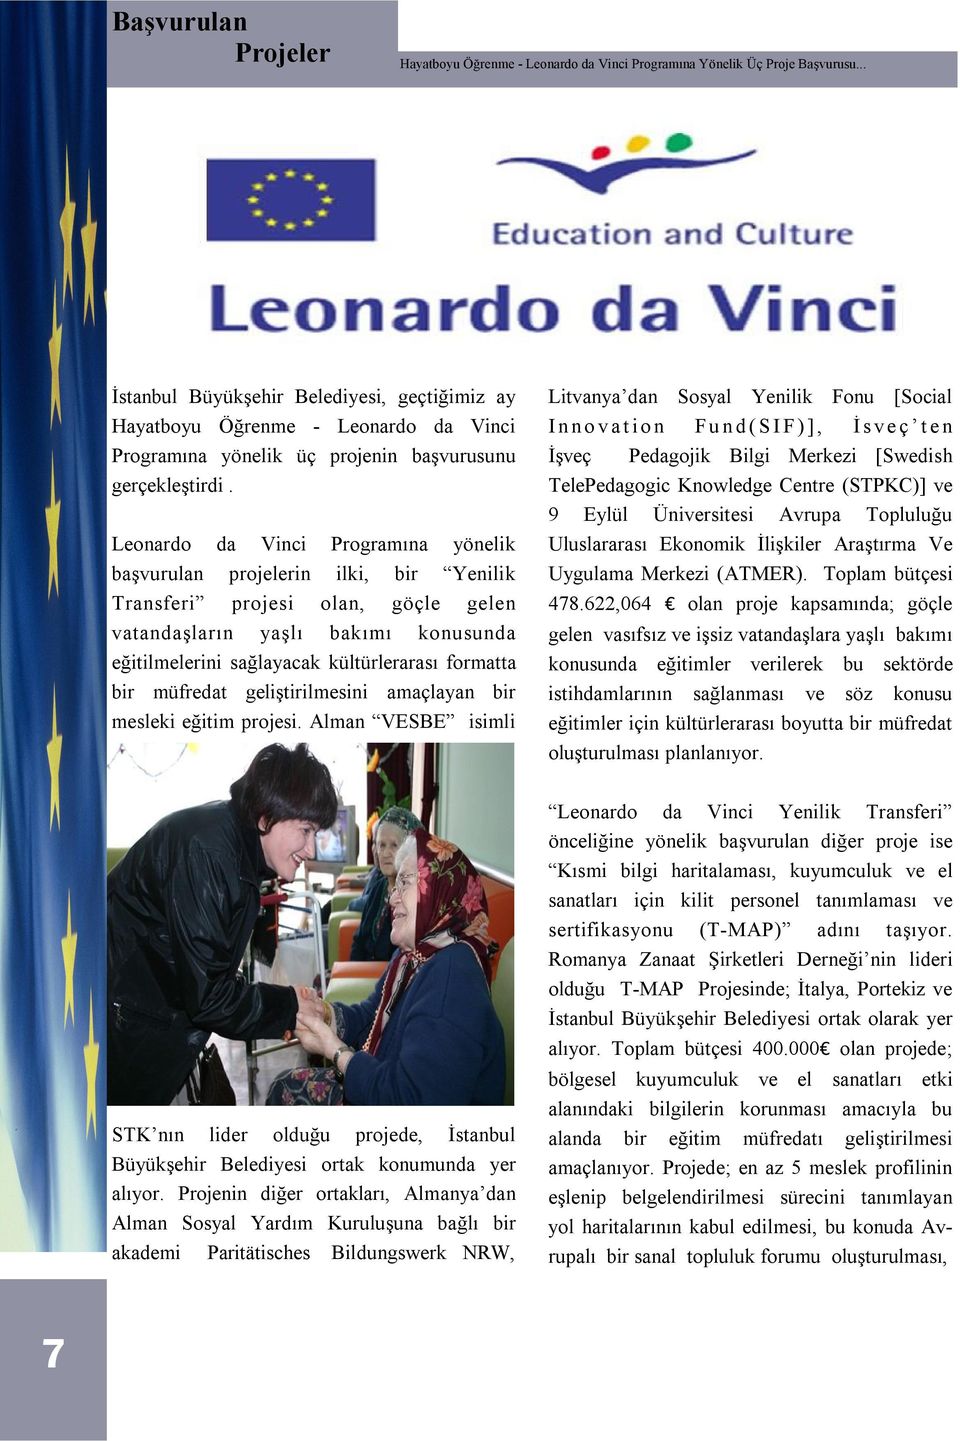 Leonardo da Vinci Programına yönelik başvurulan projelerin ilki, bir Yenilik Transferi projesi olan, göçle gelen vatandaşların yaşlı bakımı konusunda eğitilmelerini sağlayacak kültürlerarası formatta